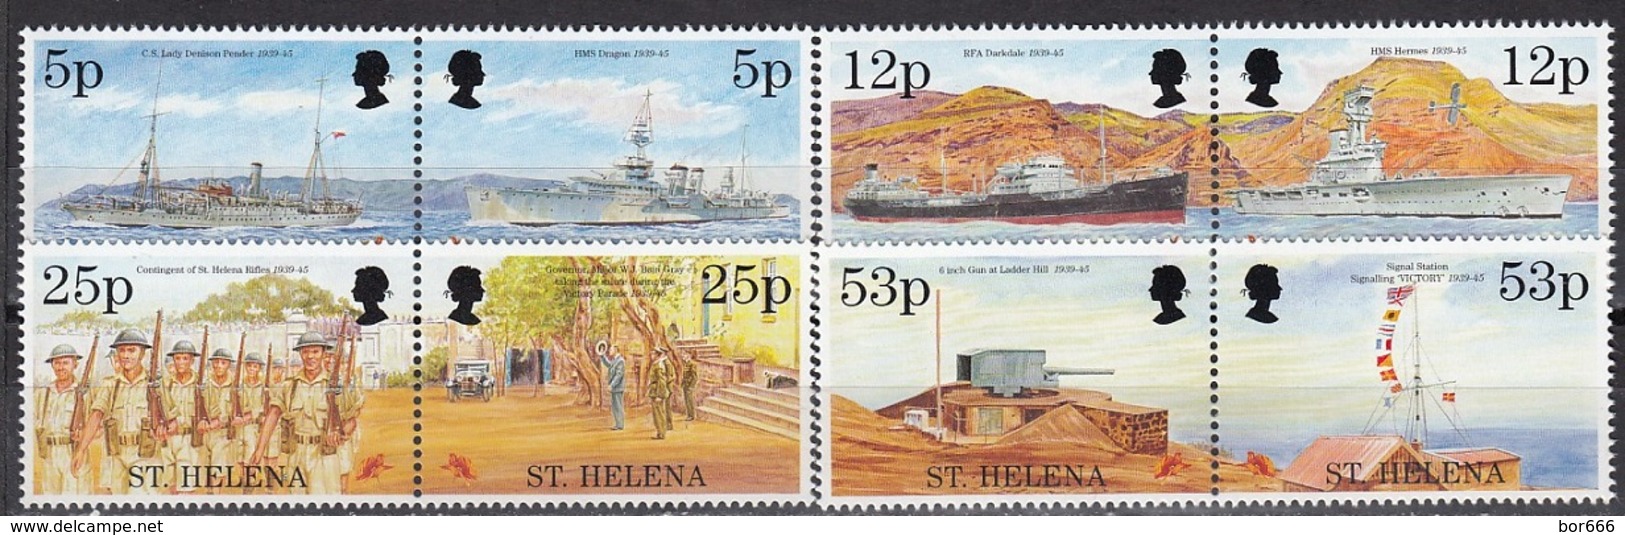 St Helena - END OF WWII / SHIPS / CAR / ARMY 1995 MNH - Saint Helena Island